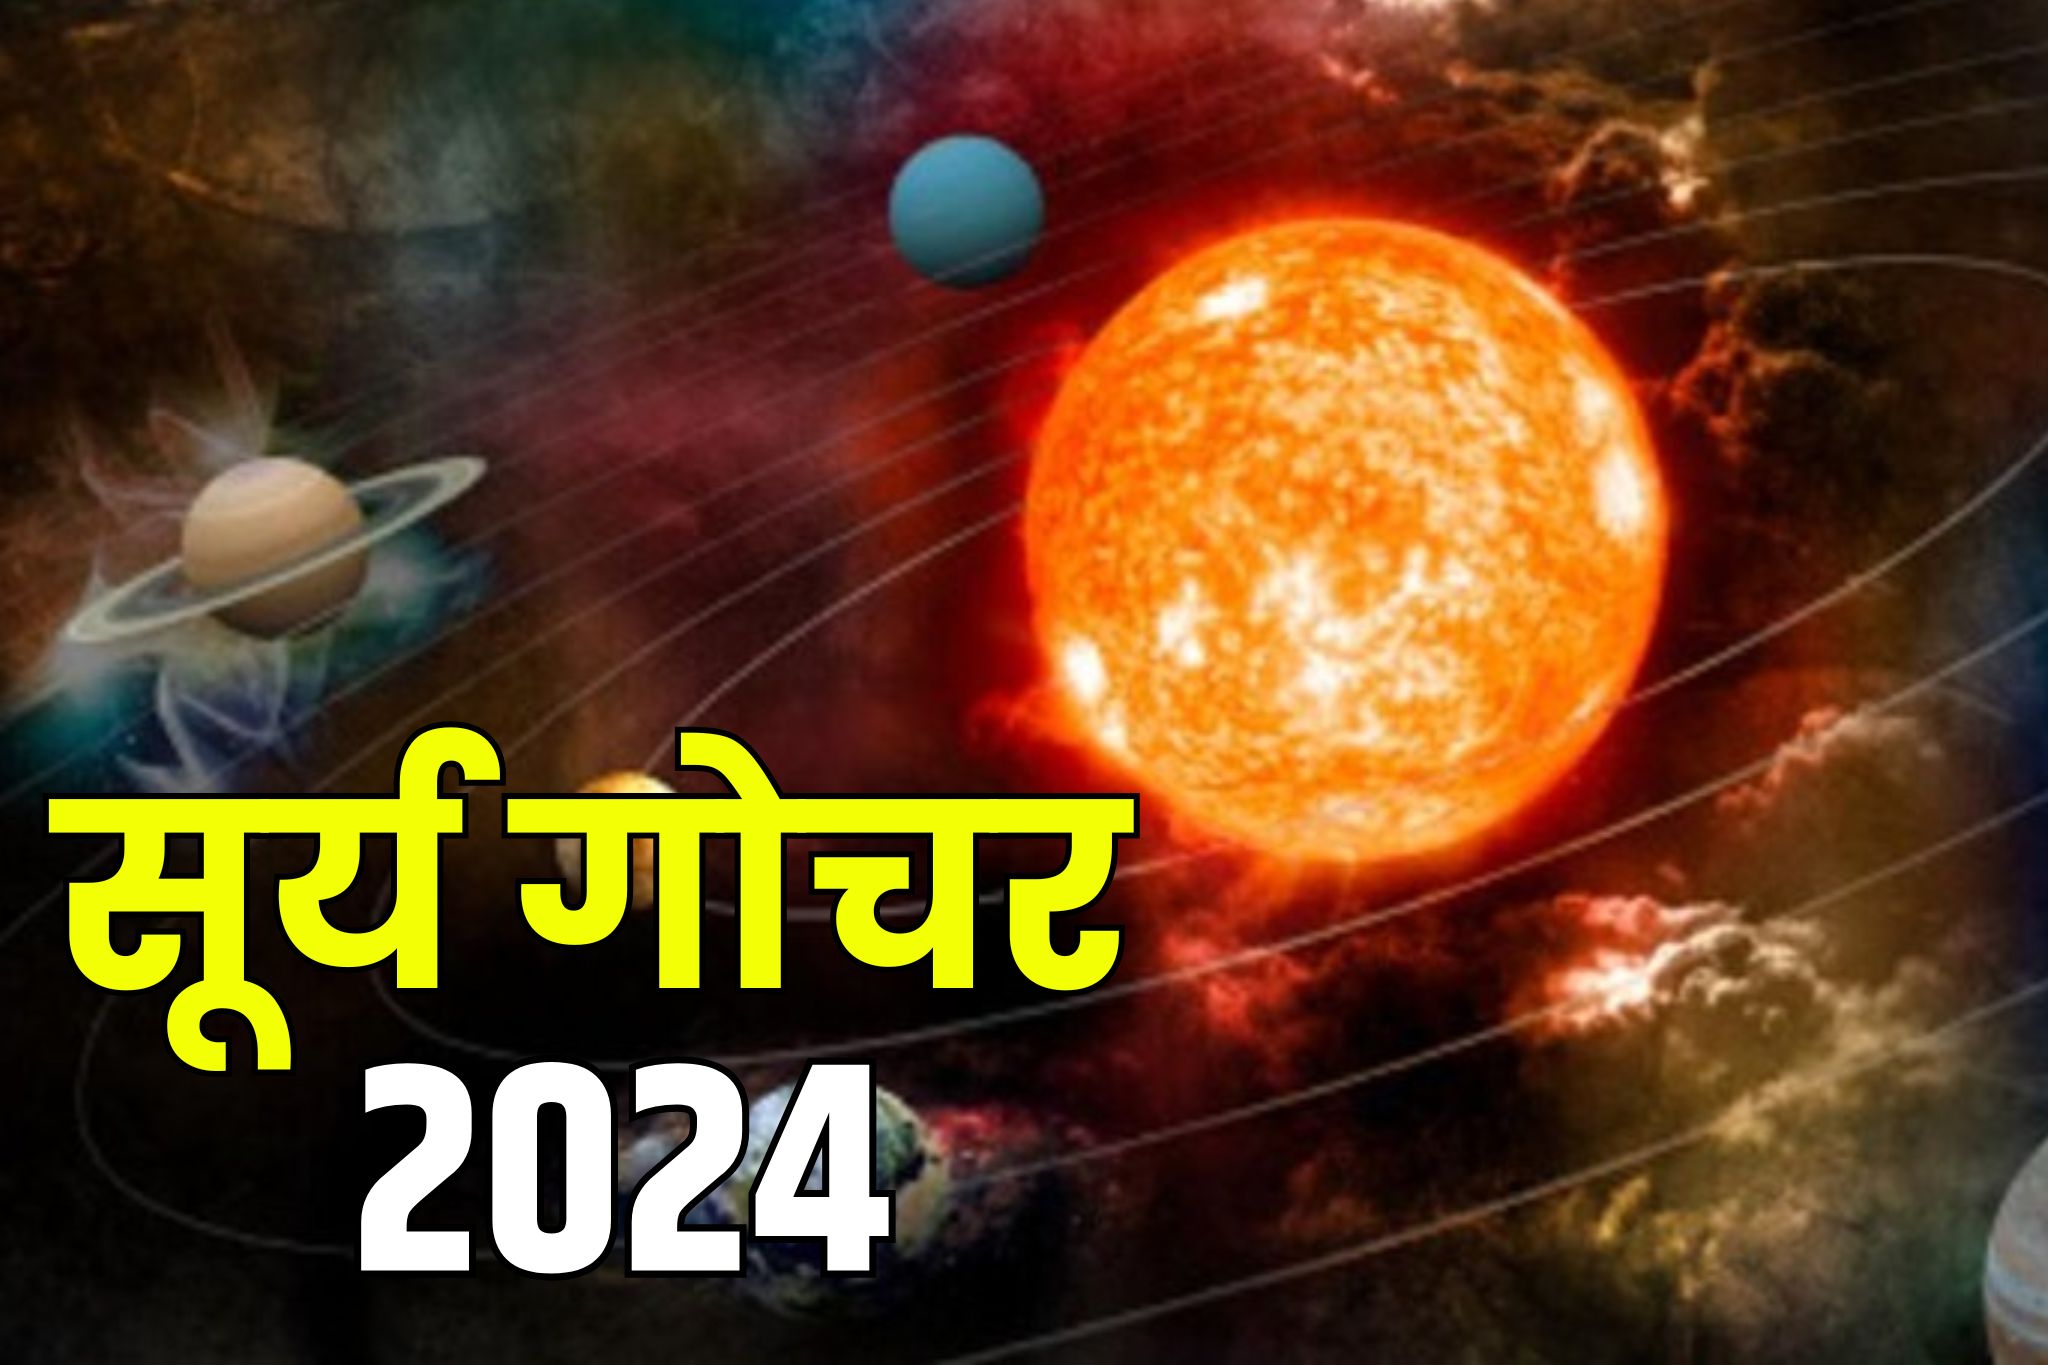 Surya Gochar May 2024: सूर्य इस माह करेंगे वृषभ राशि में गोचर.. हो जाएगी पूरे जीवन की कायापलट.. नहीं रुकेगी धन की आवक